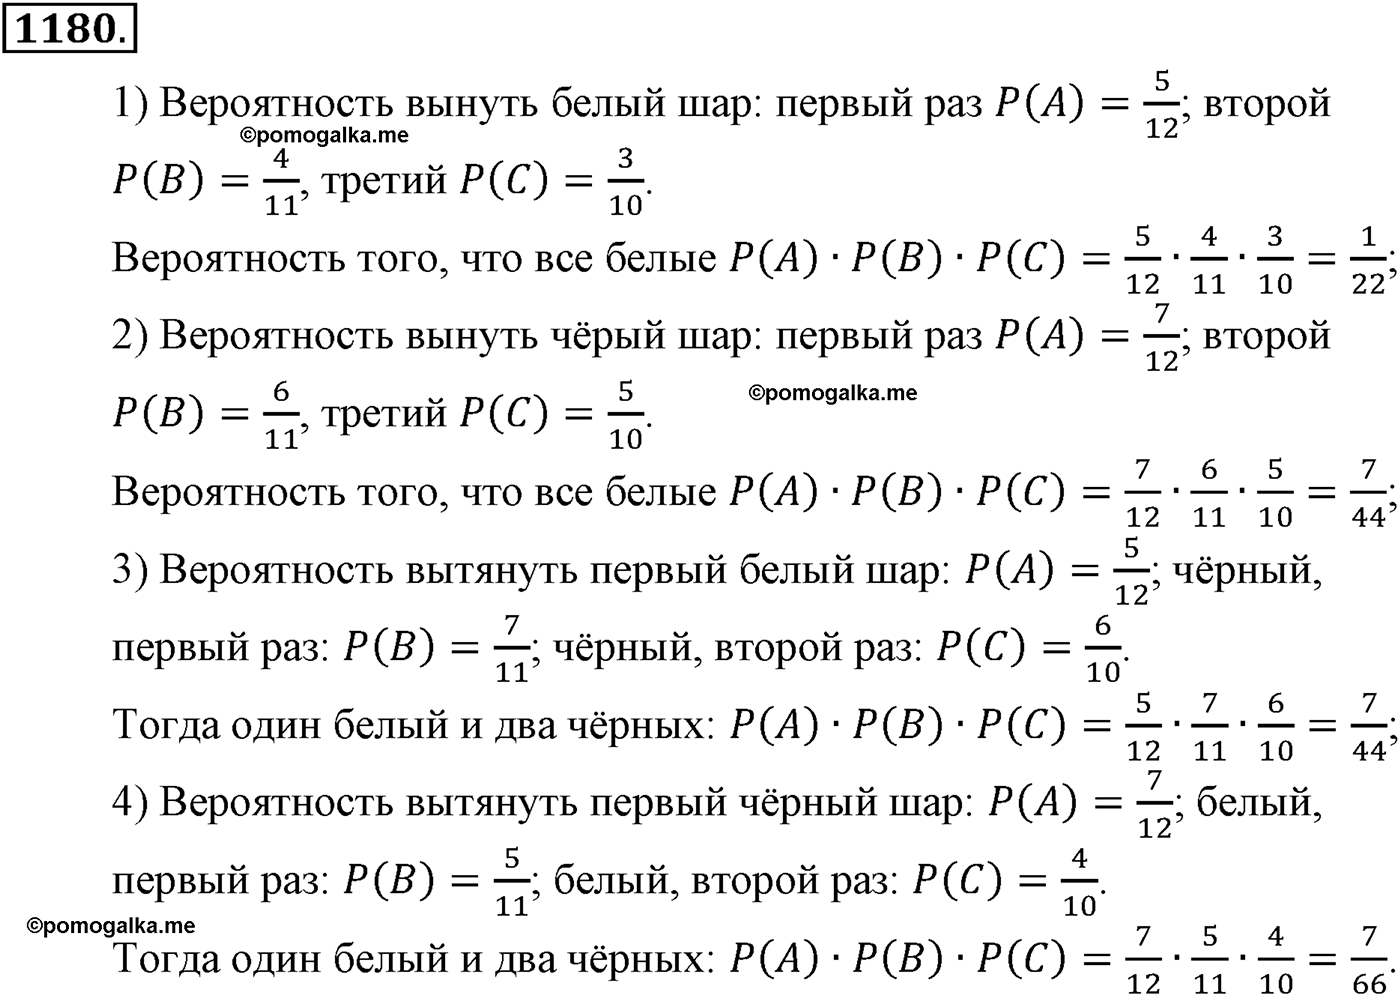 разбор задачи №1180 по алгебре за 10-11 класс из учебника Алимова, Колягина